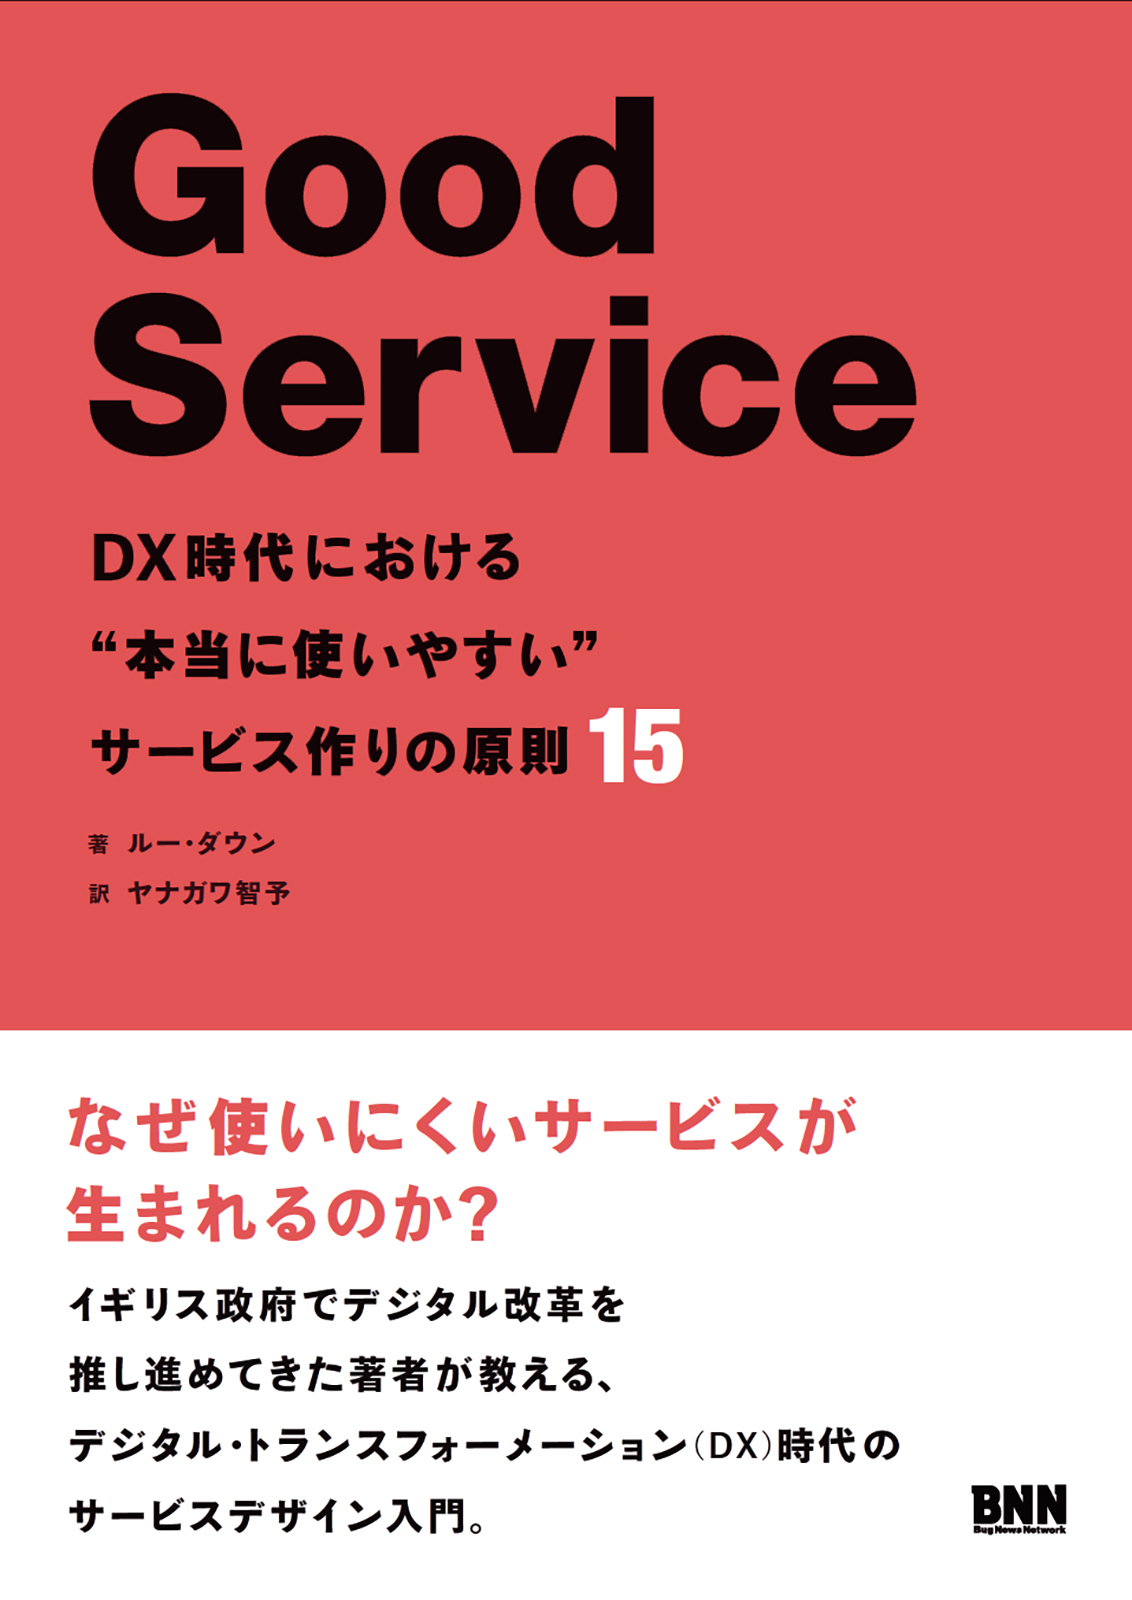 書籍『Good Service』の表紙画像。